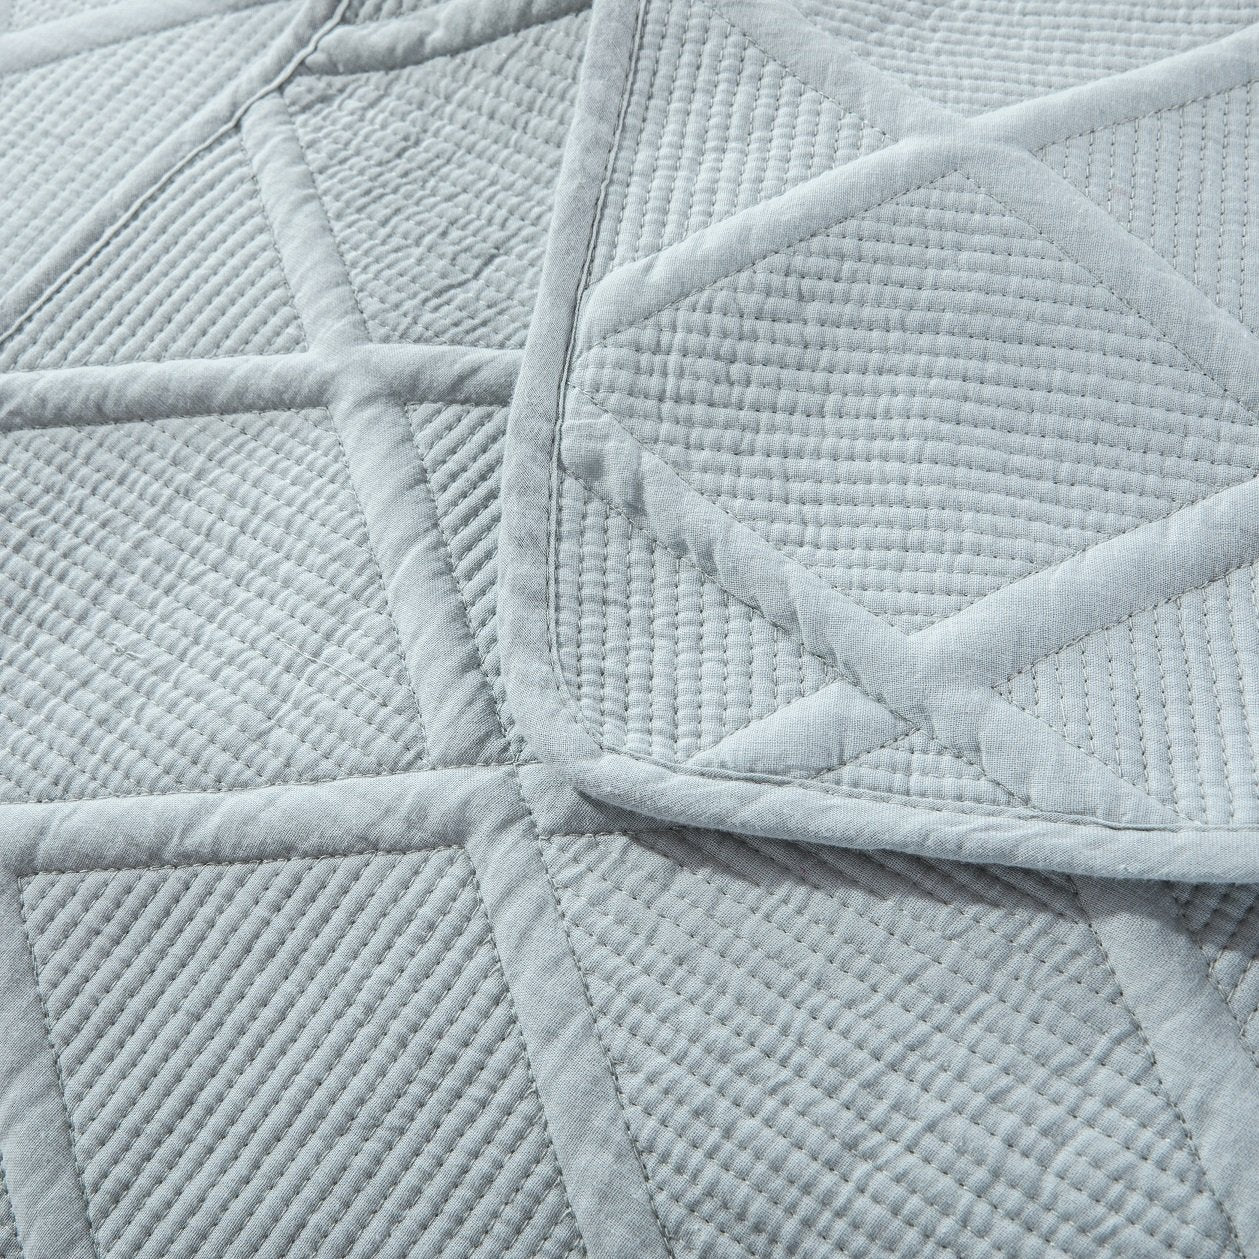 Tache Soothing Pastel Seafoam Blue Diamond Stitch Cotton Quilt Set (JHW-856) - Tache Home Fashion